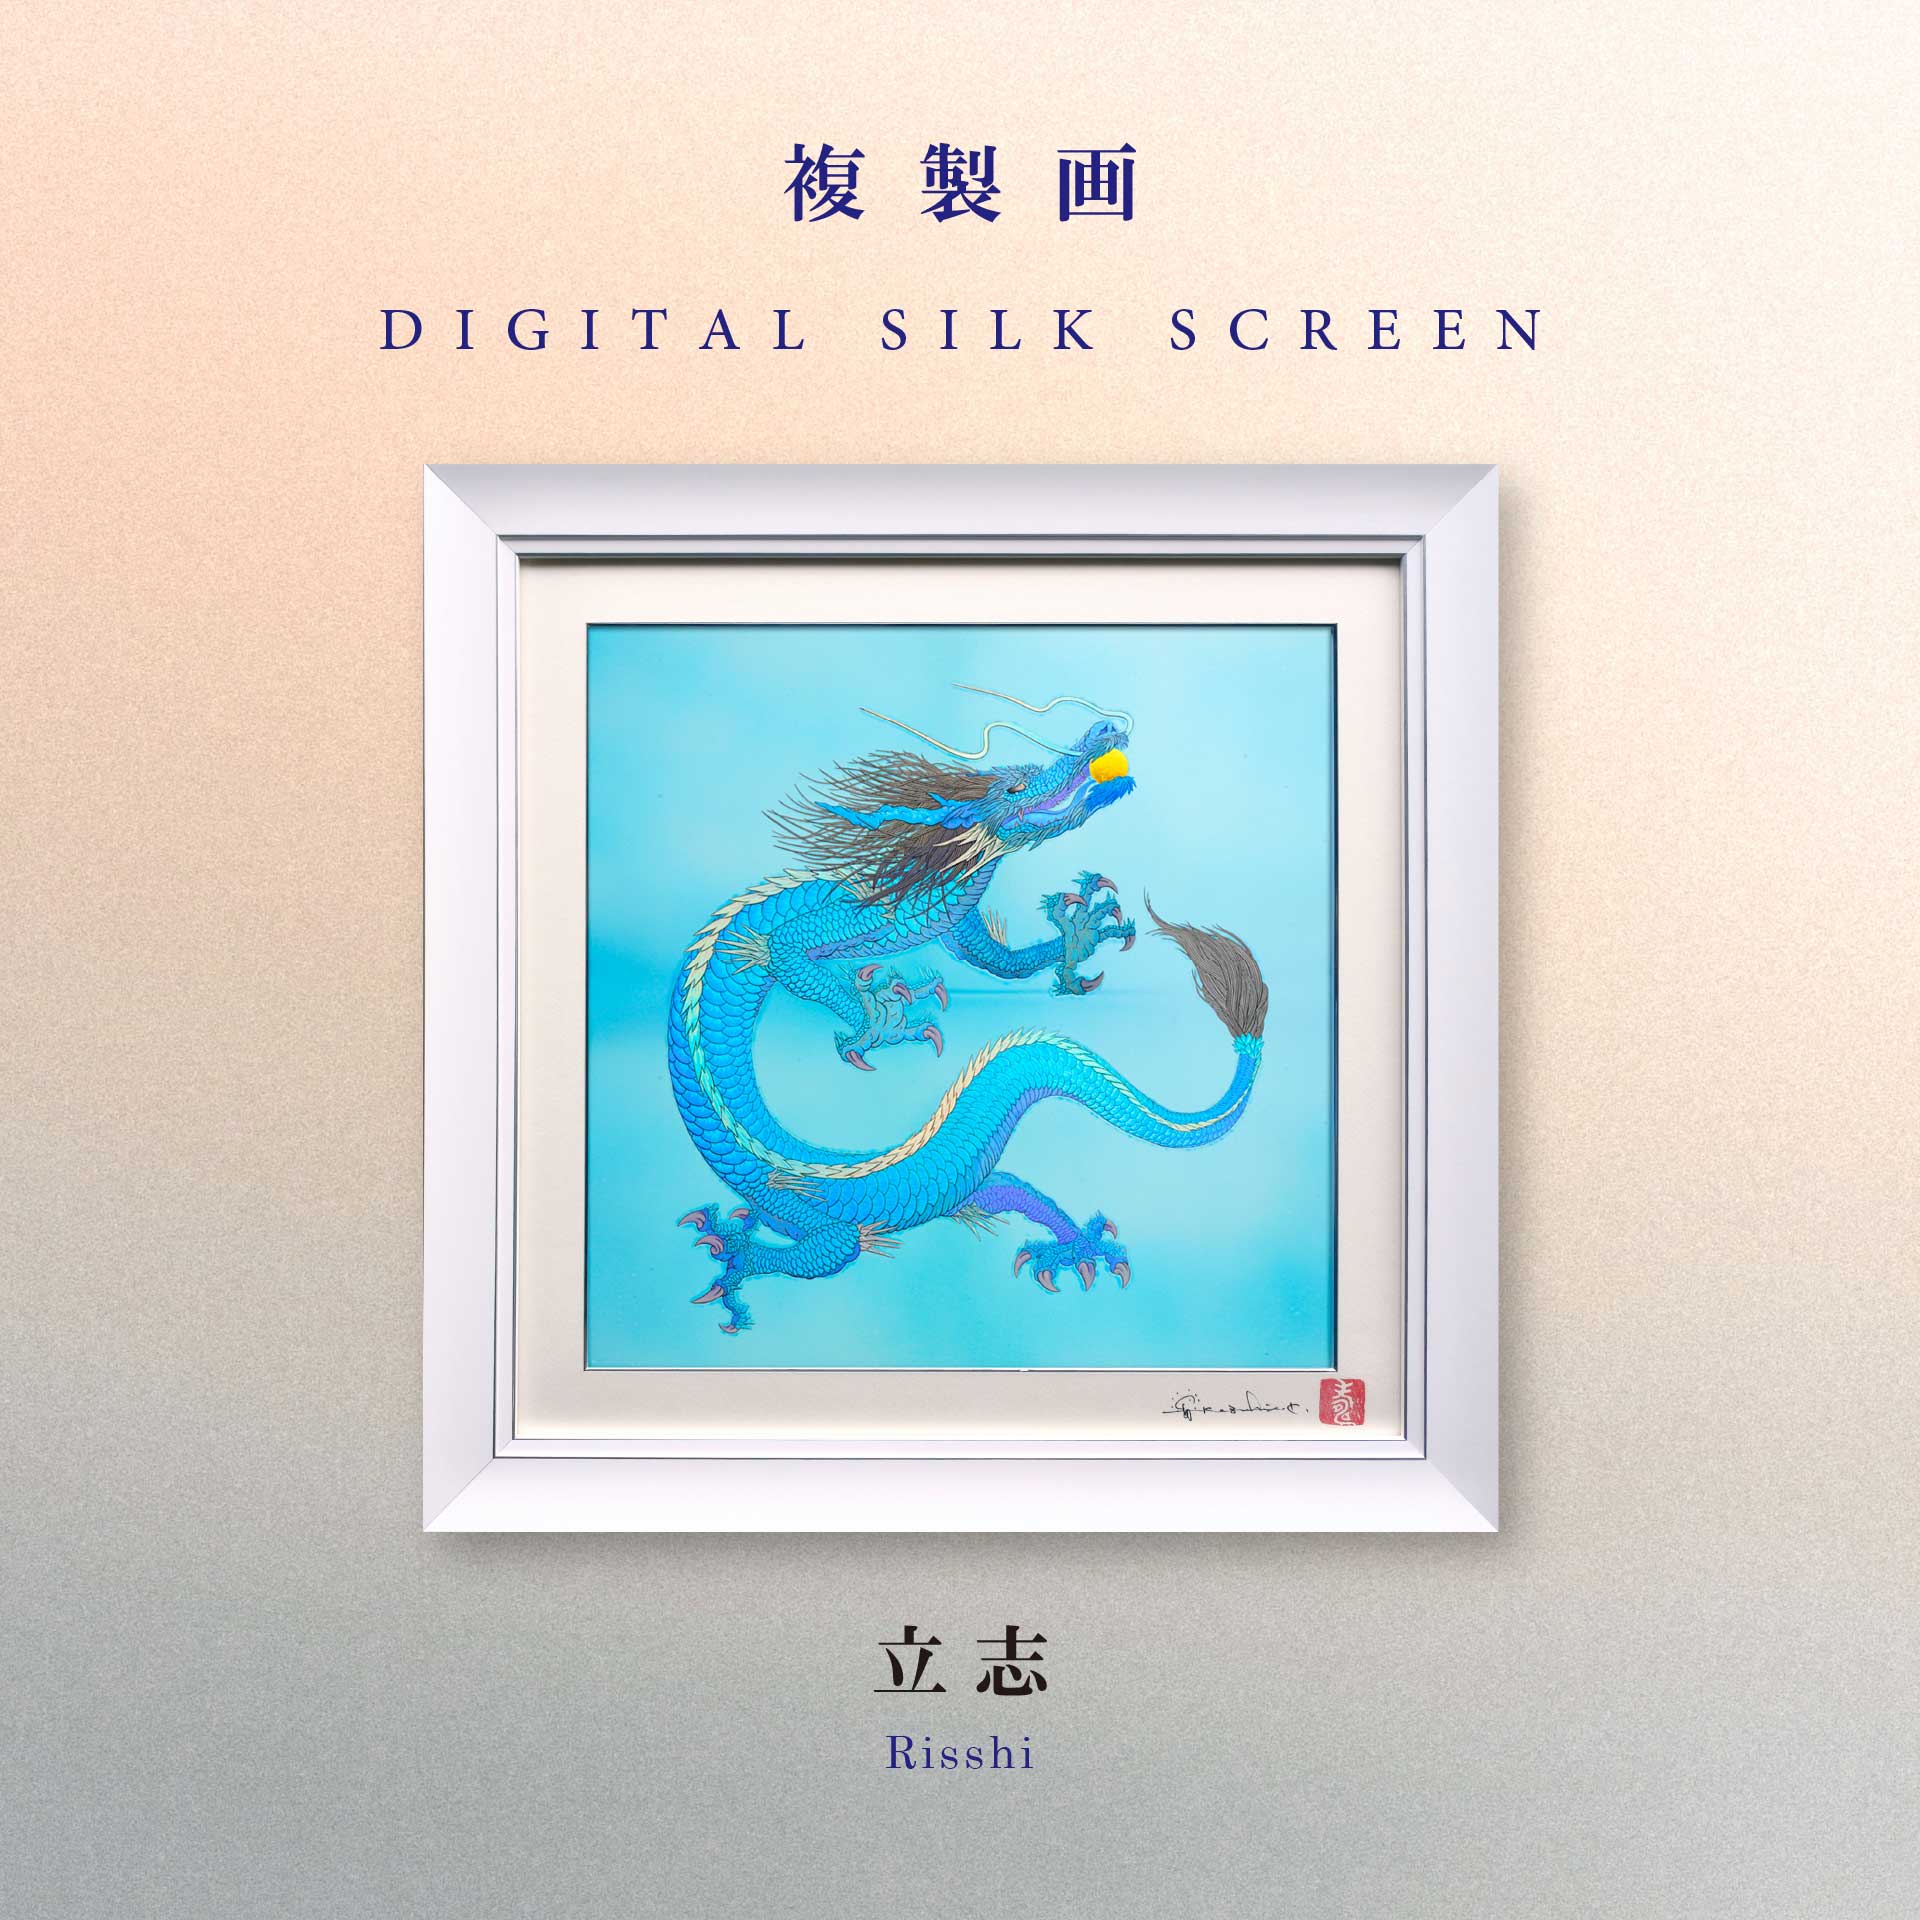 草場一壽 陶彩画  「ときめき 幸運の壺」デジタルシルクスクリーン